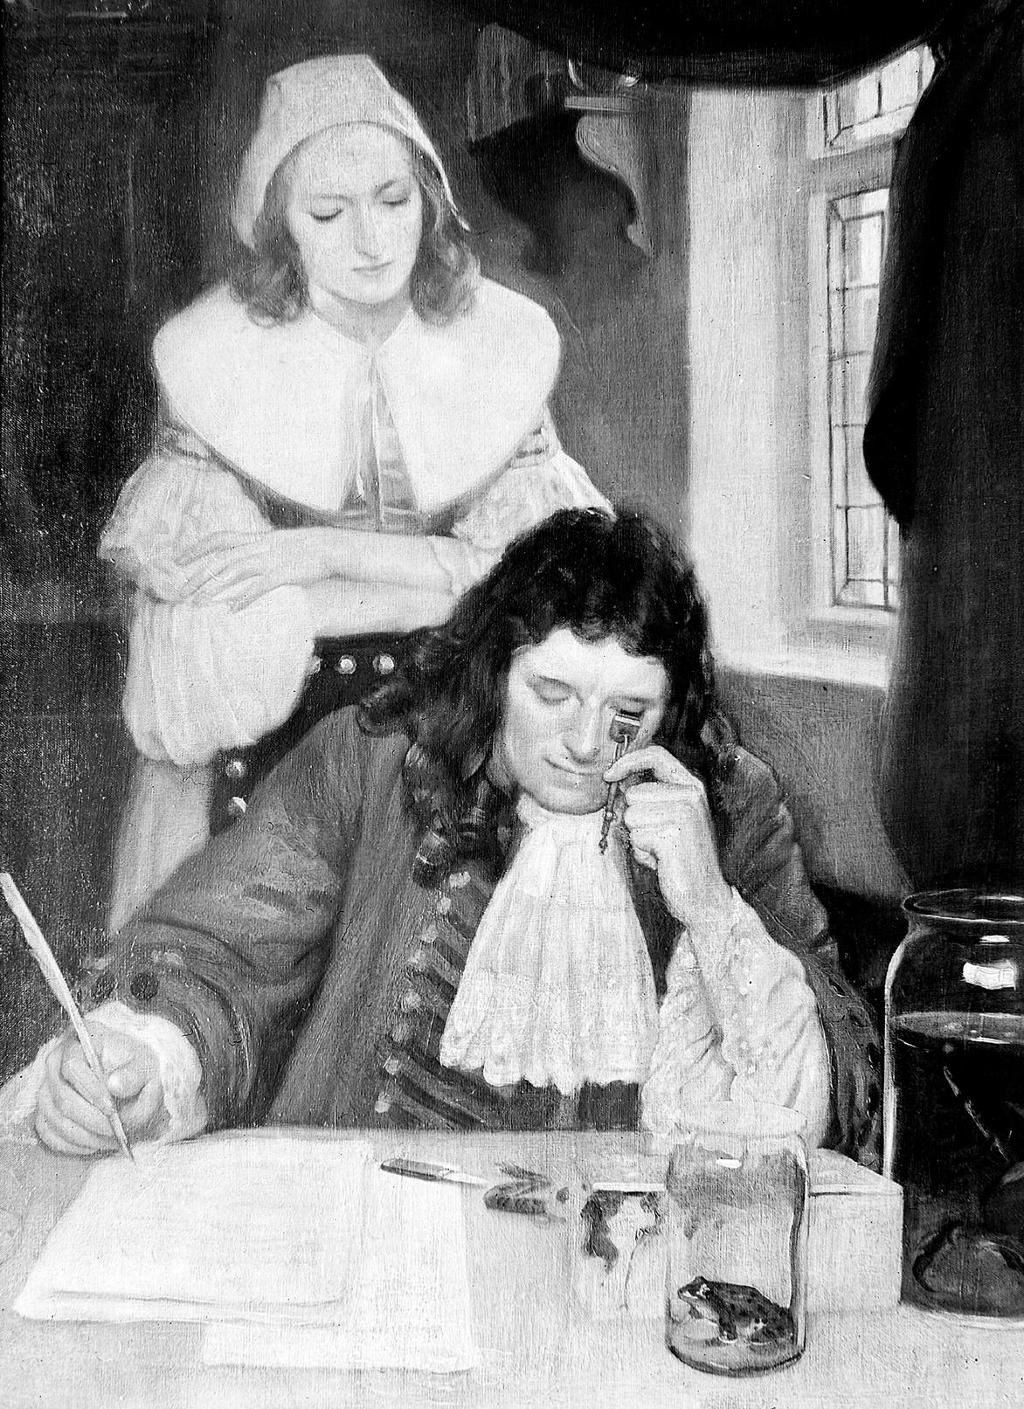 Oljemaleri av vitenskapsmannen Anton van Leeuwenhoek. Motivet er av en mann som sitter bak et skrivebord og ser gjennom et håndholdt mikroskop. Bak mannen står en kvinne som titter på arbeidet til mannen over skulderen hans. Illustrasjon.